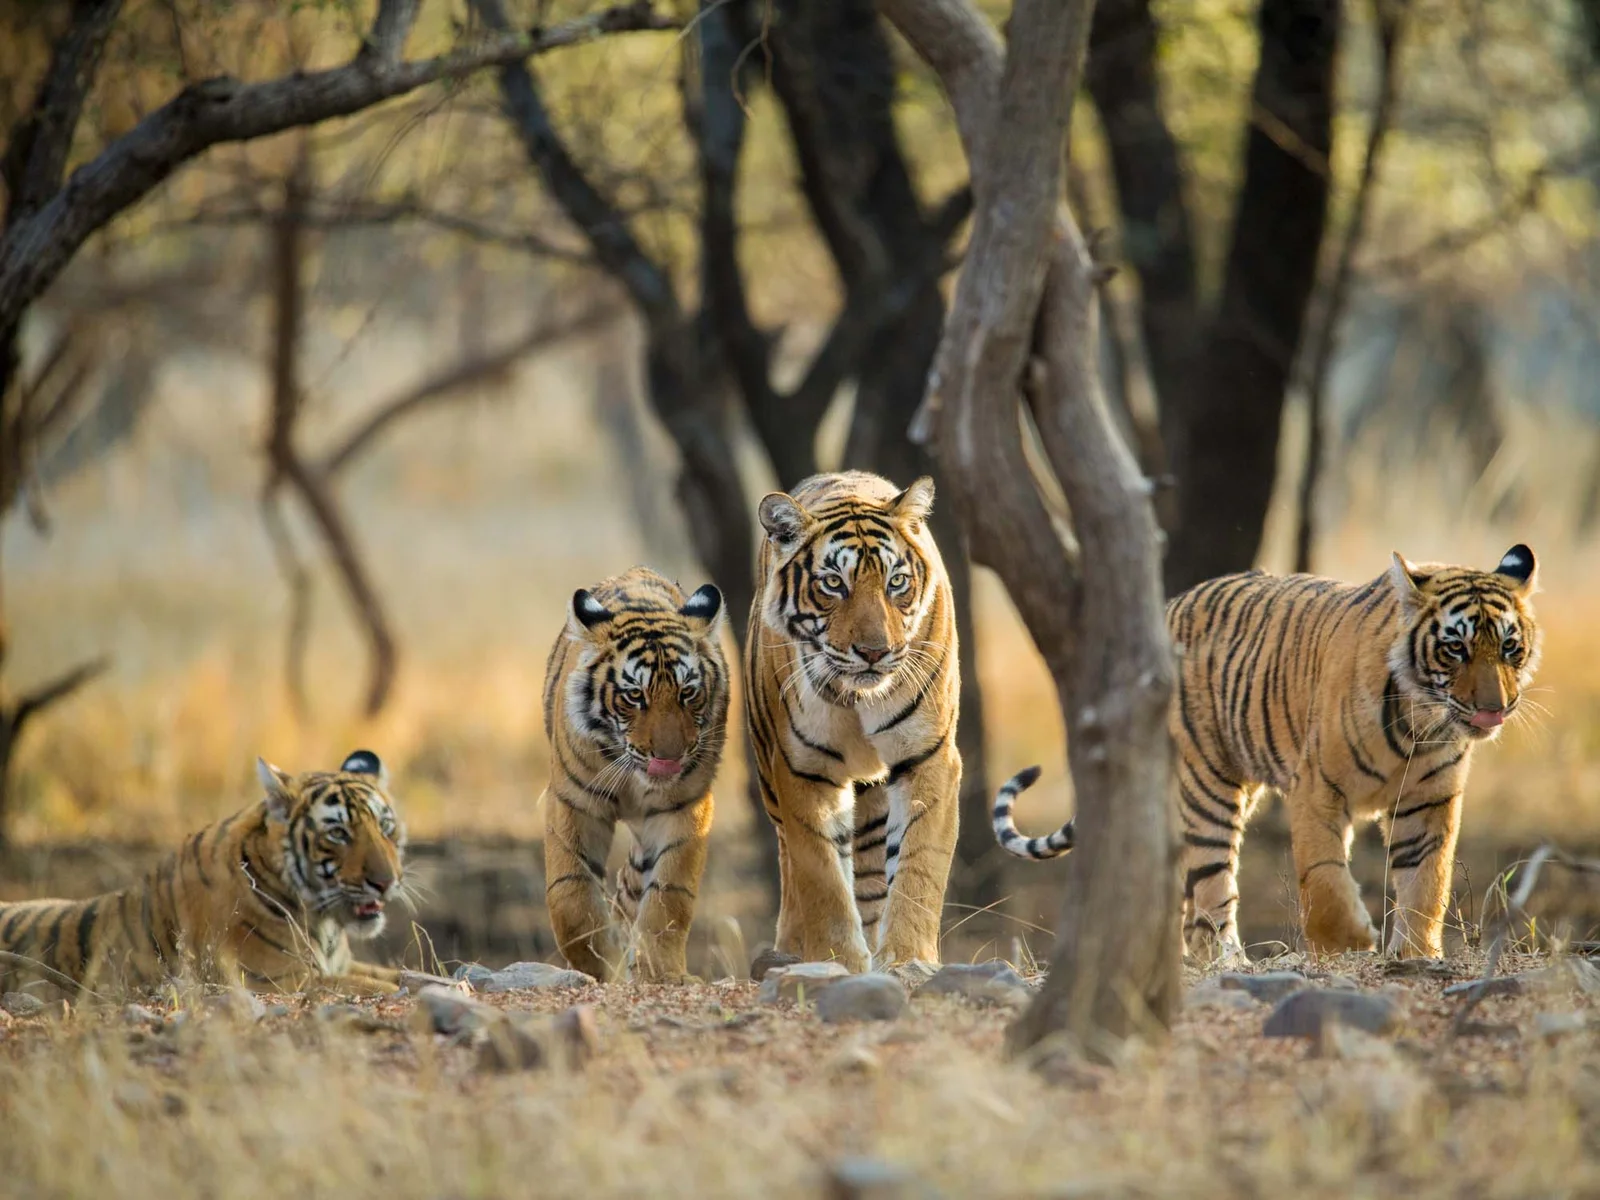 Tigers-at-Ranthambhore-National-Park-Rajasthan-India